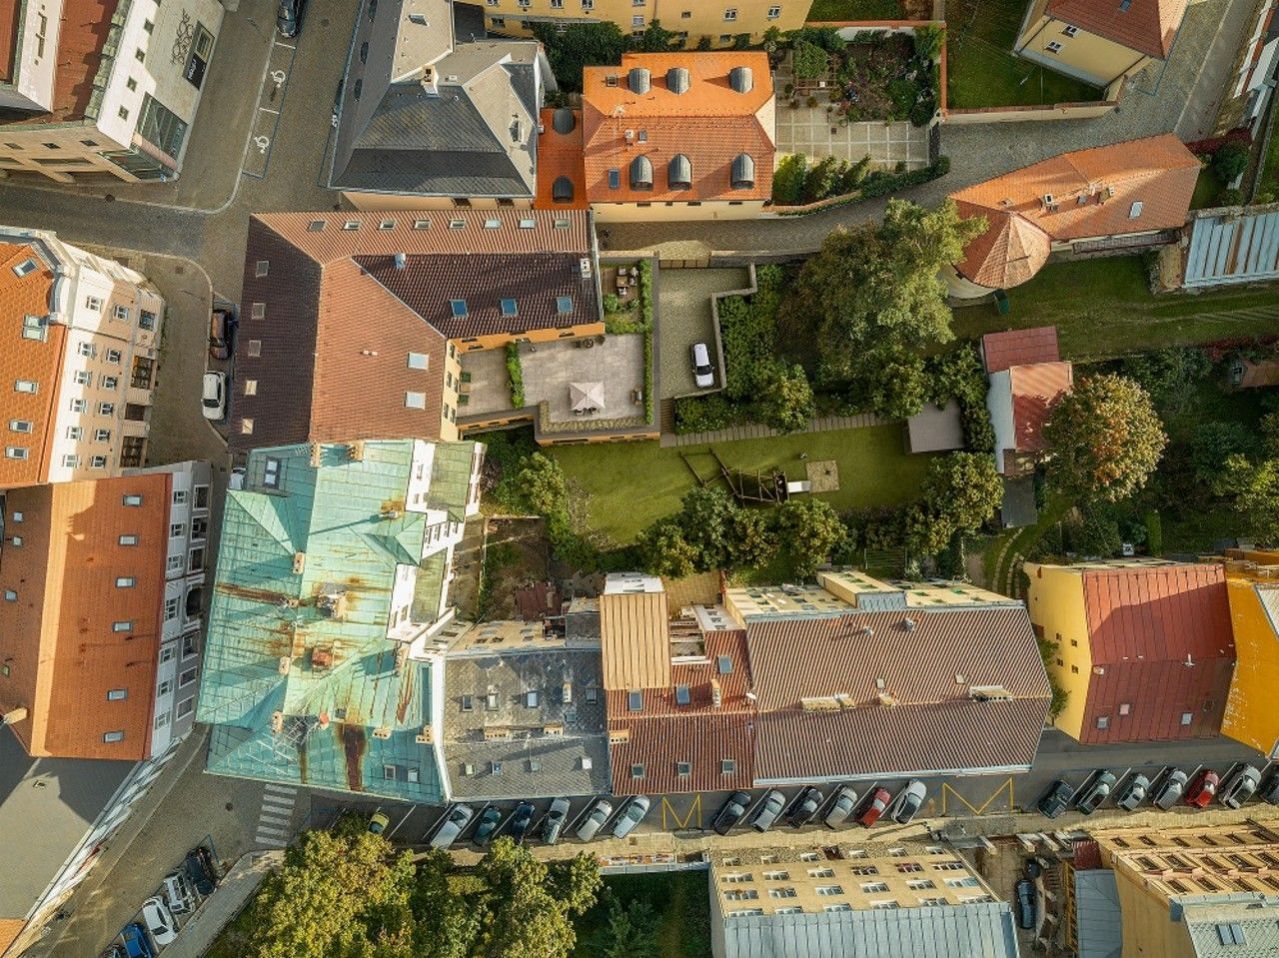 Moderní bydlení s privátní zahradou pro vás stavíme v centru Jihlavy na ulici Divadelní., obrázek č. 1